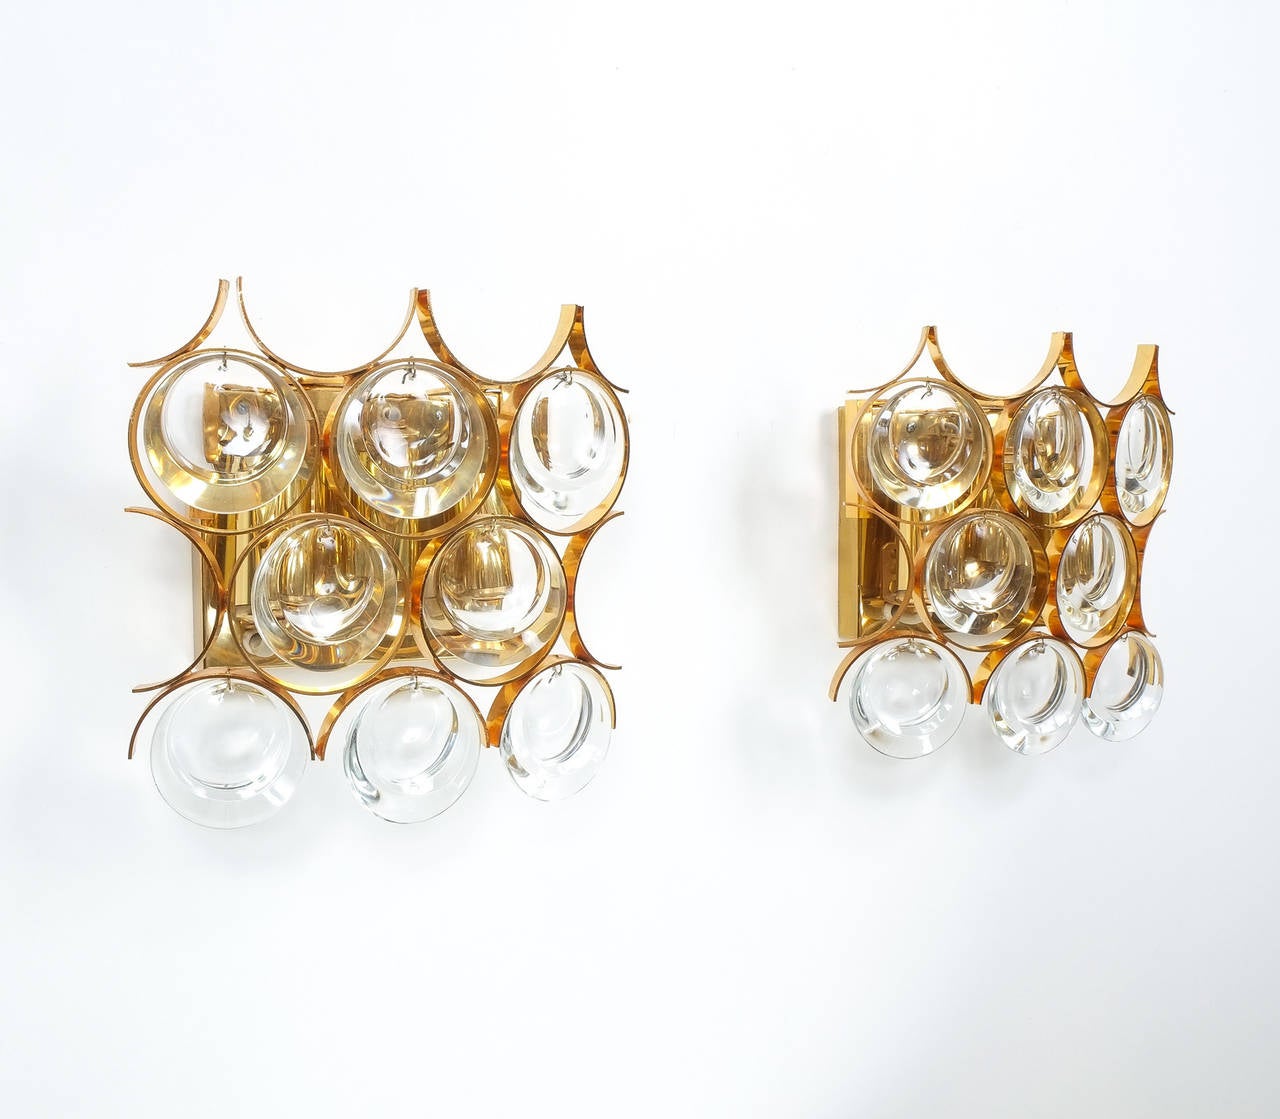 Schönes Paar vergoldeter Messing- und Glasleuchten von Palwa aus den 1960er Jahren.
Sie sind in ausgezeichnetem Zustand und wurden professionell gereinigt und neu verkabelt. Sie fassen jeweils bis zu drei Glühbirnen. Der Preis gilt für ein Paar.

